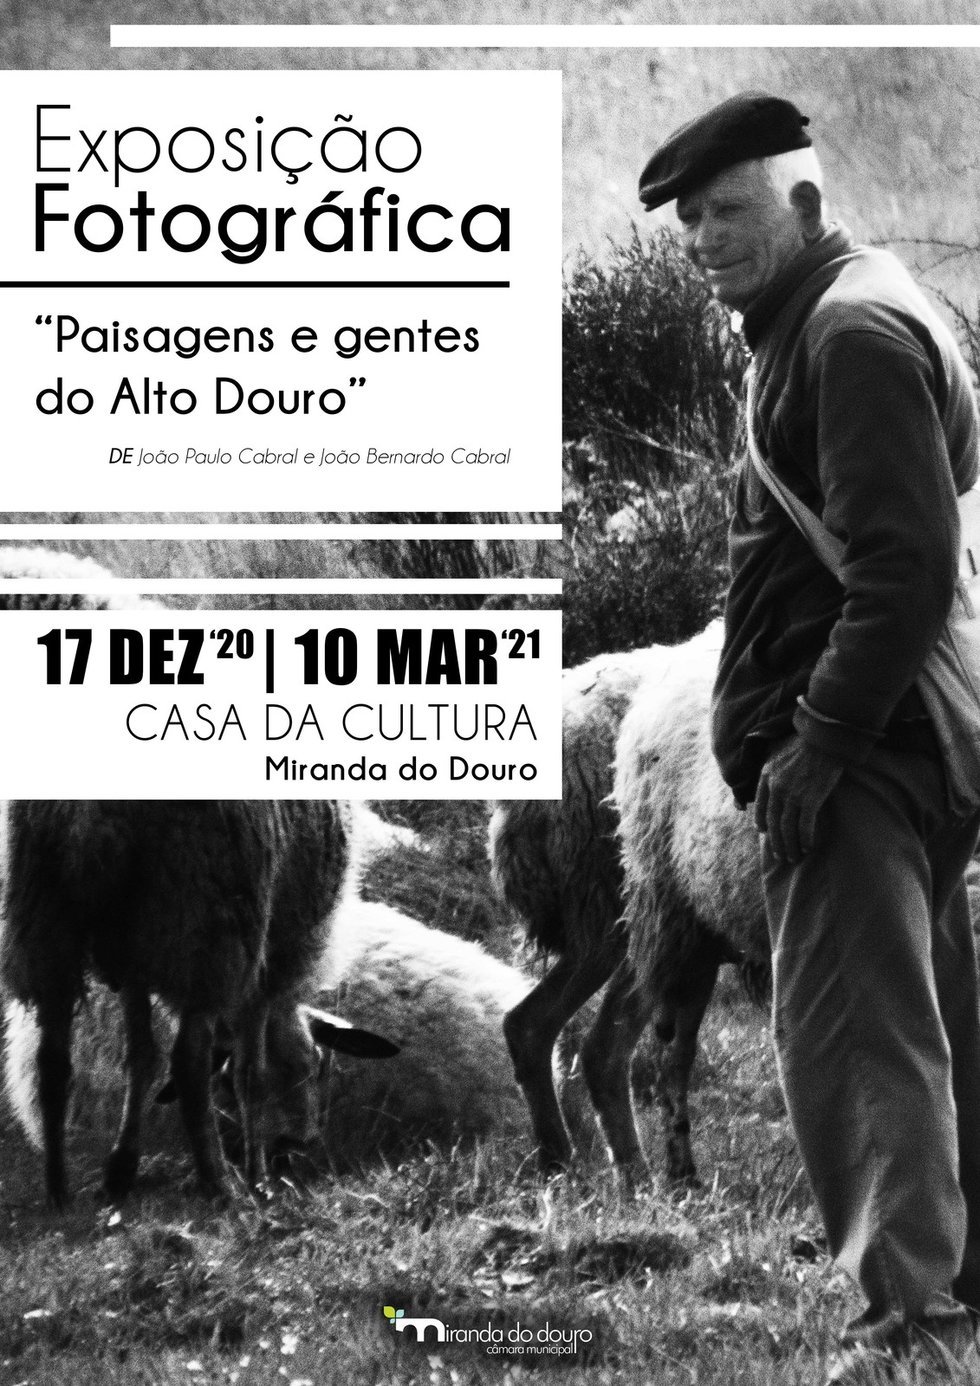 Exposição Fotográfica  "Paisagens e gentes do Alto Douro" 